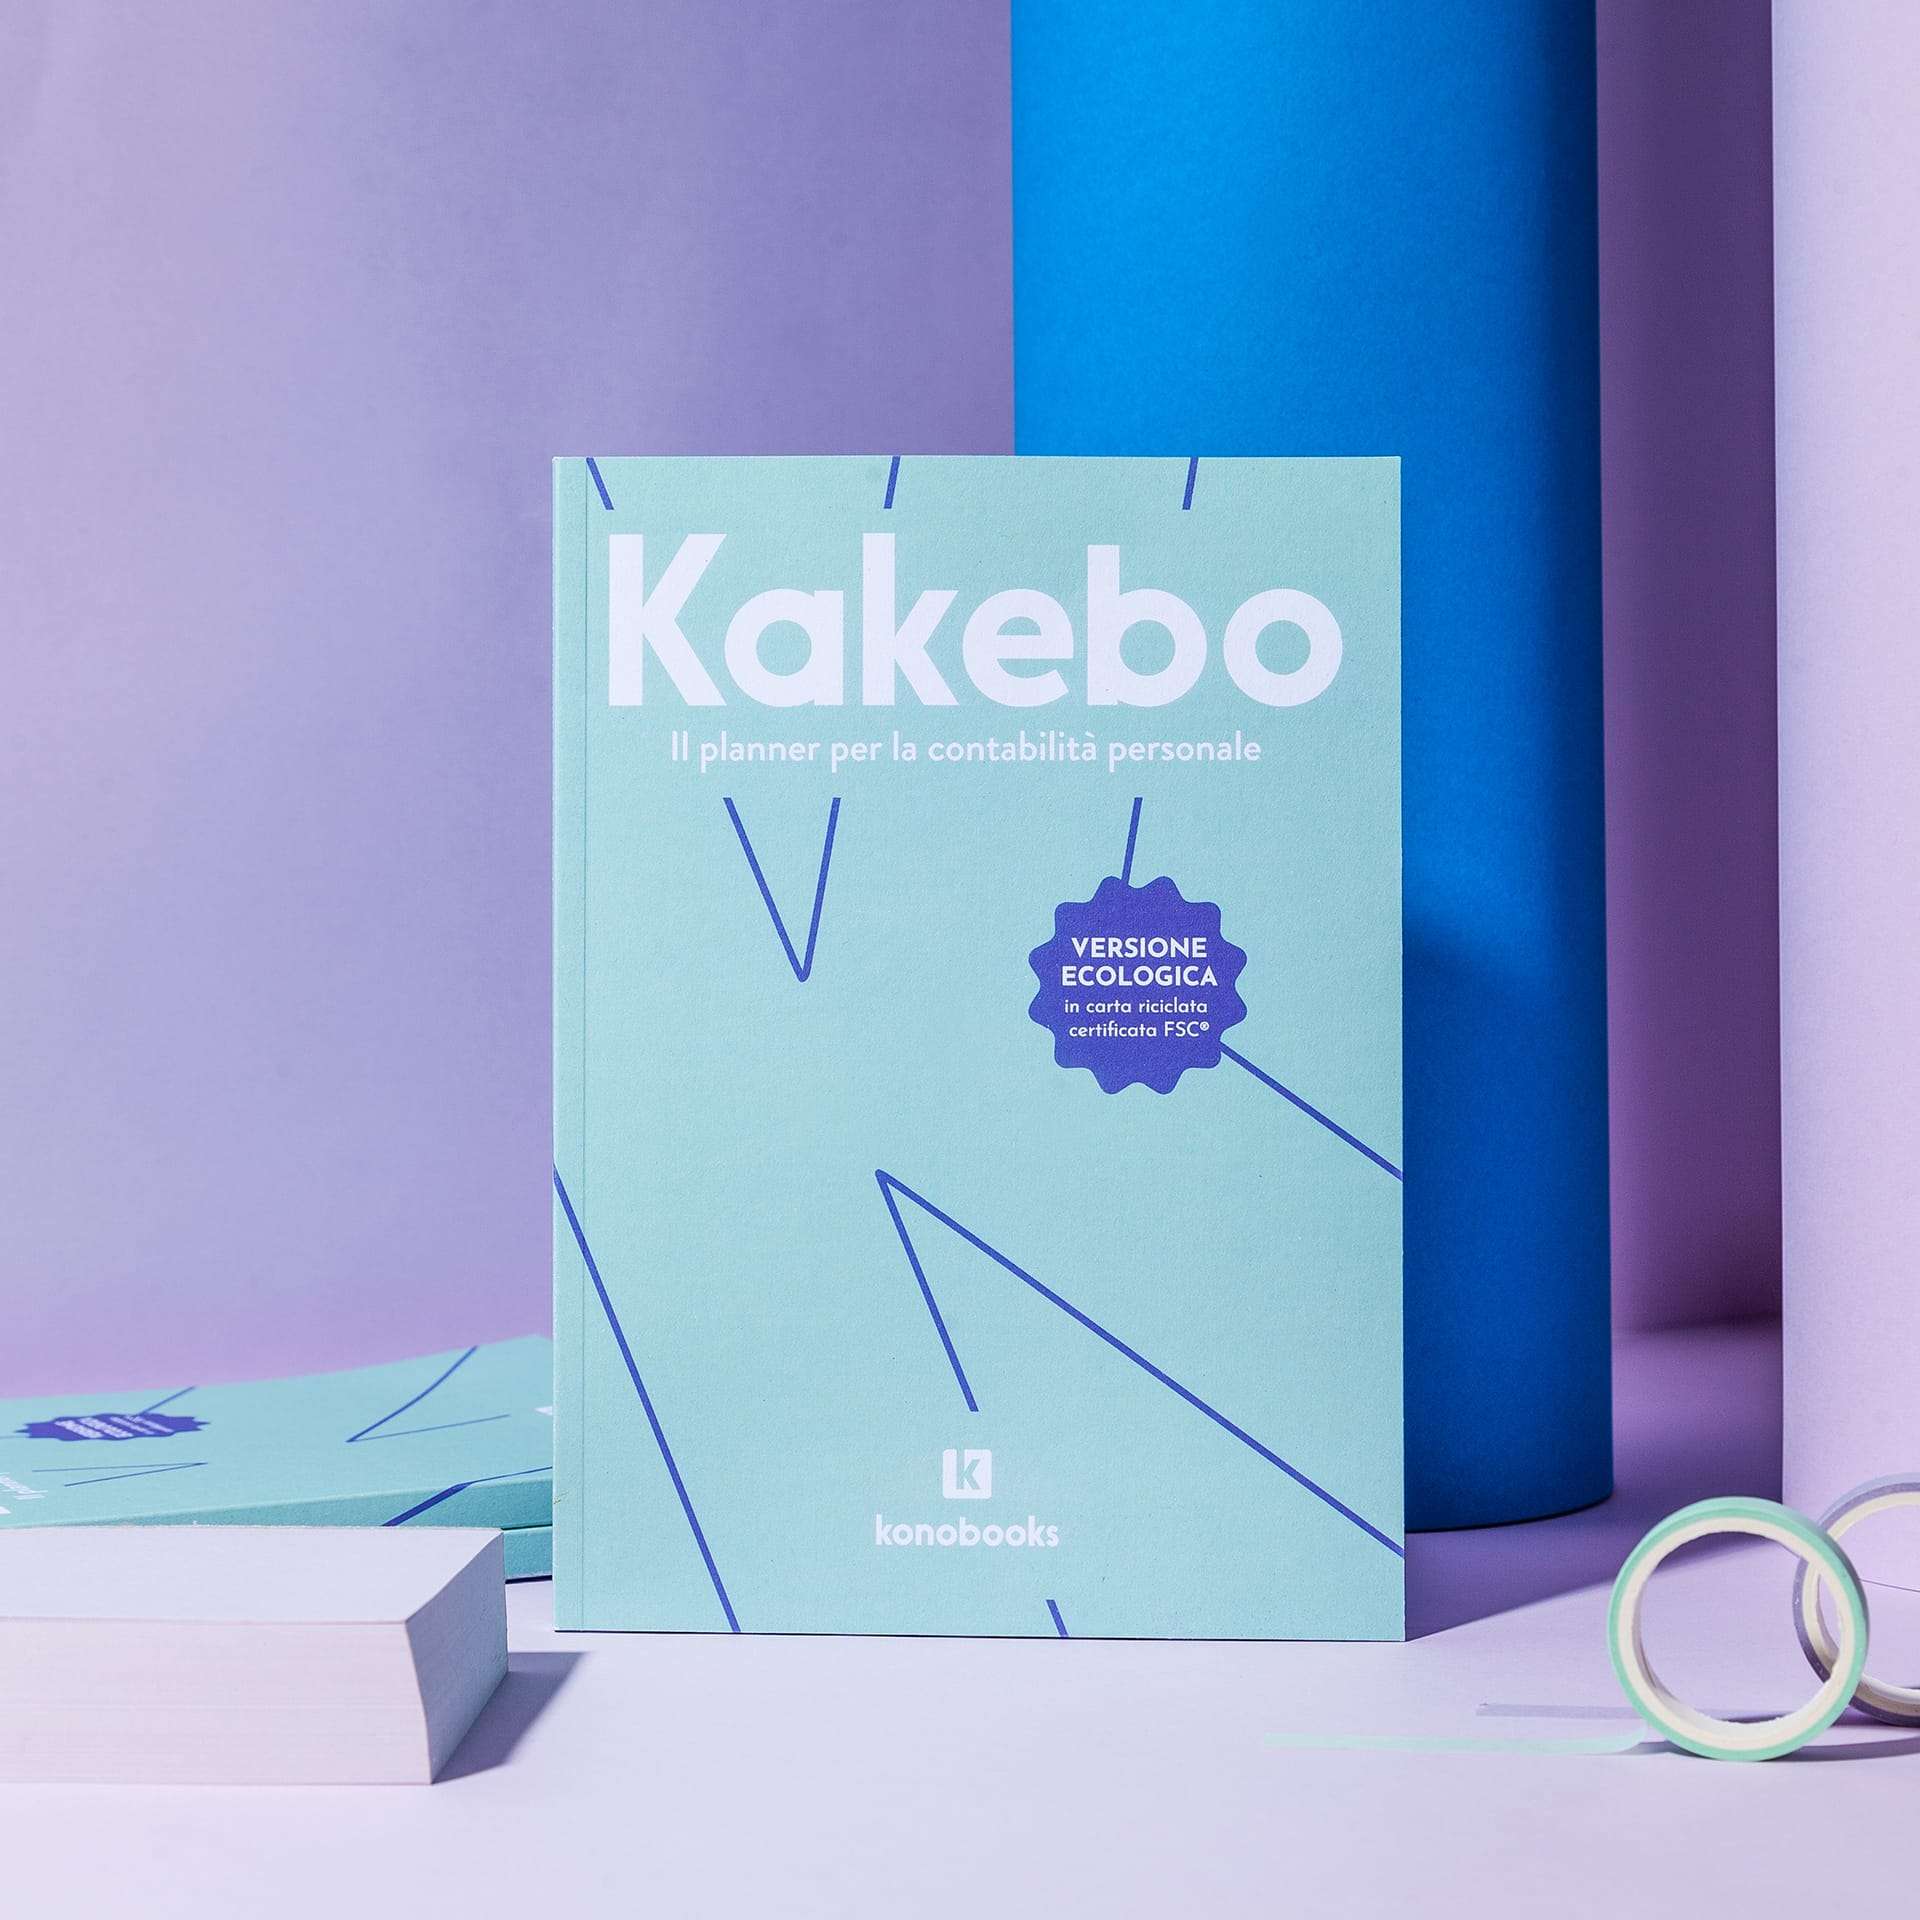 Kakebo ecologico konobooks